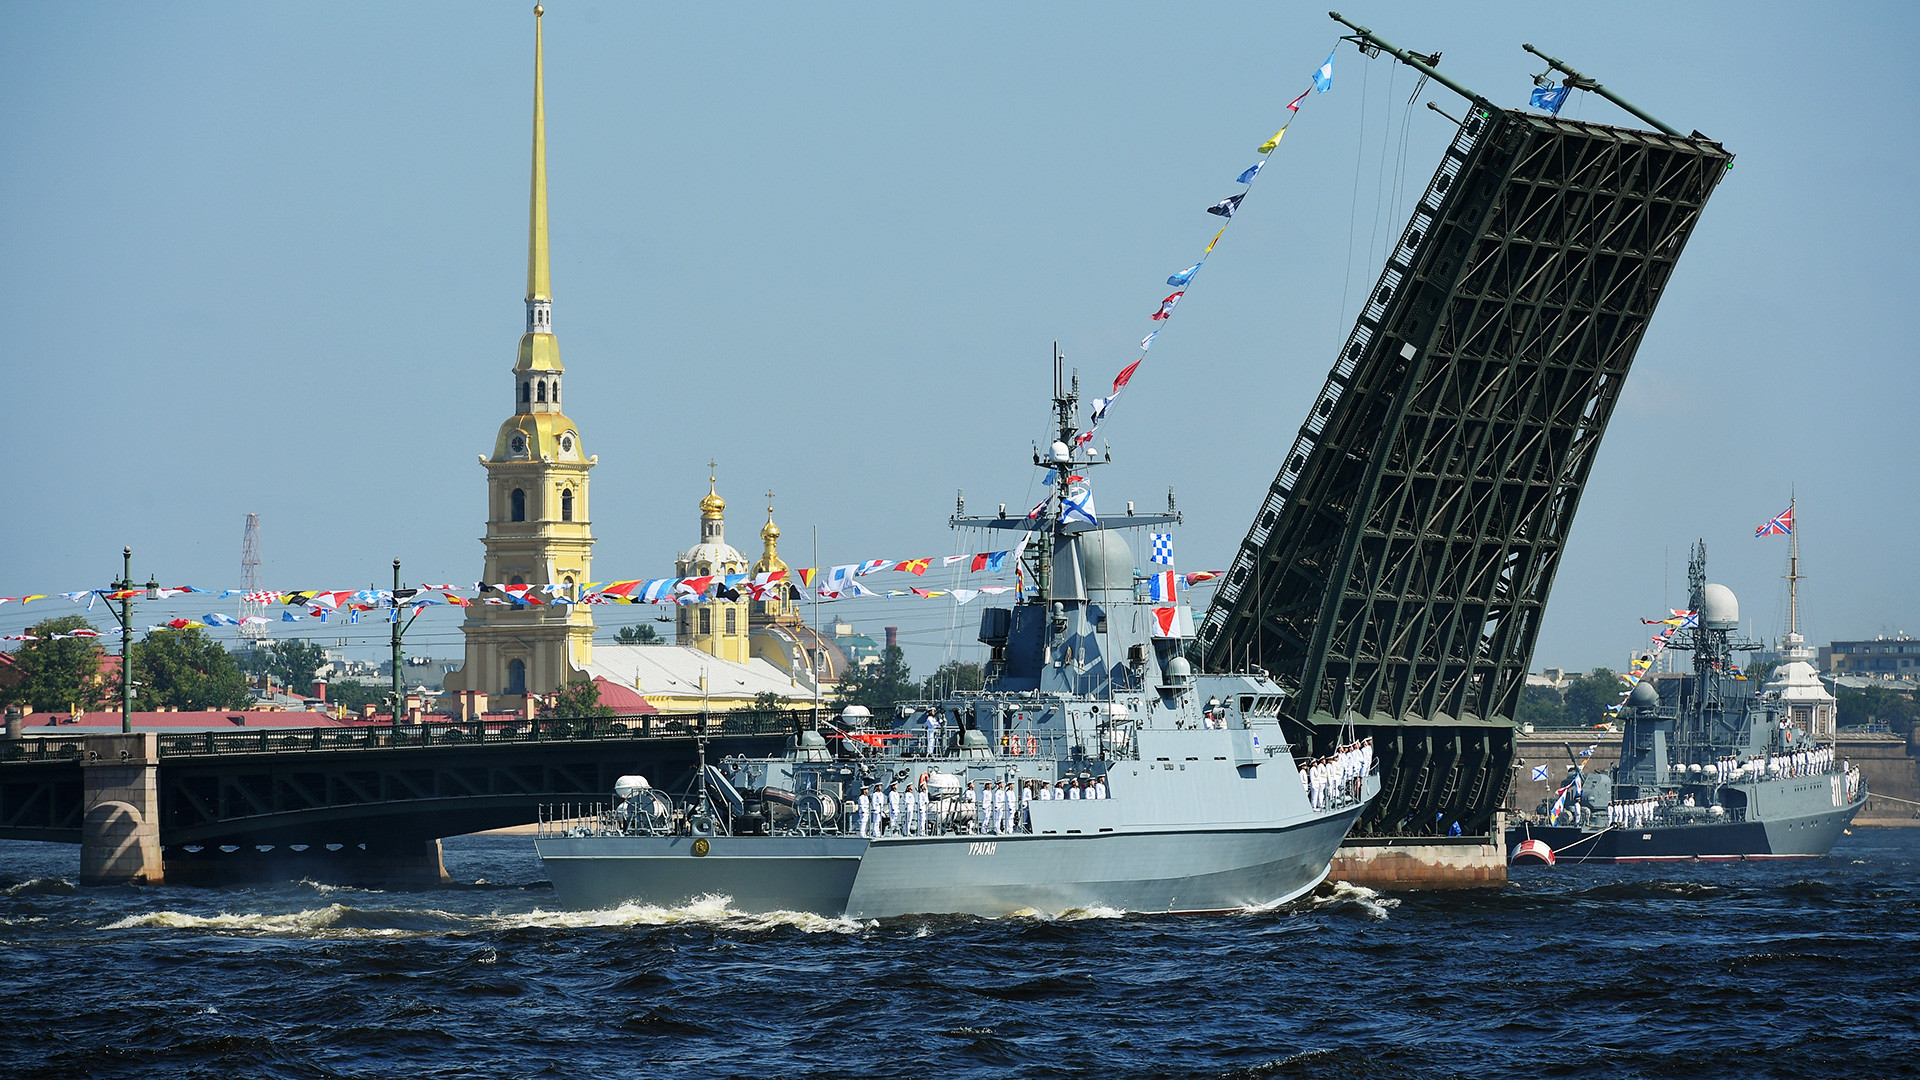 Мали ракетни брод „Ураган“ на главној поморској војној паради у Санкт Петербургу поводом Дана Ратне морнарице Русије.